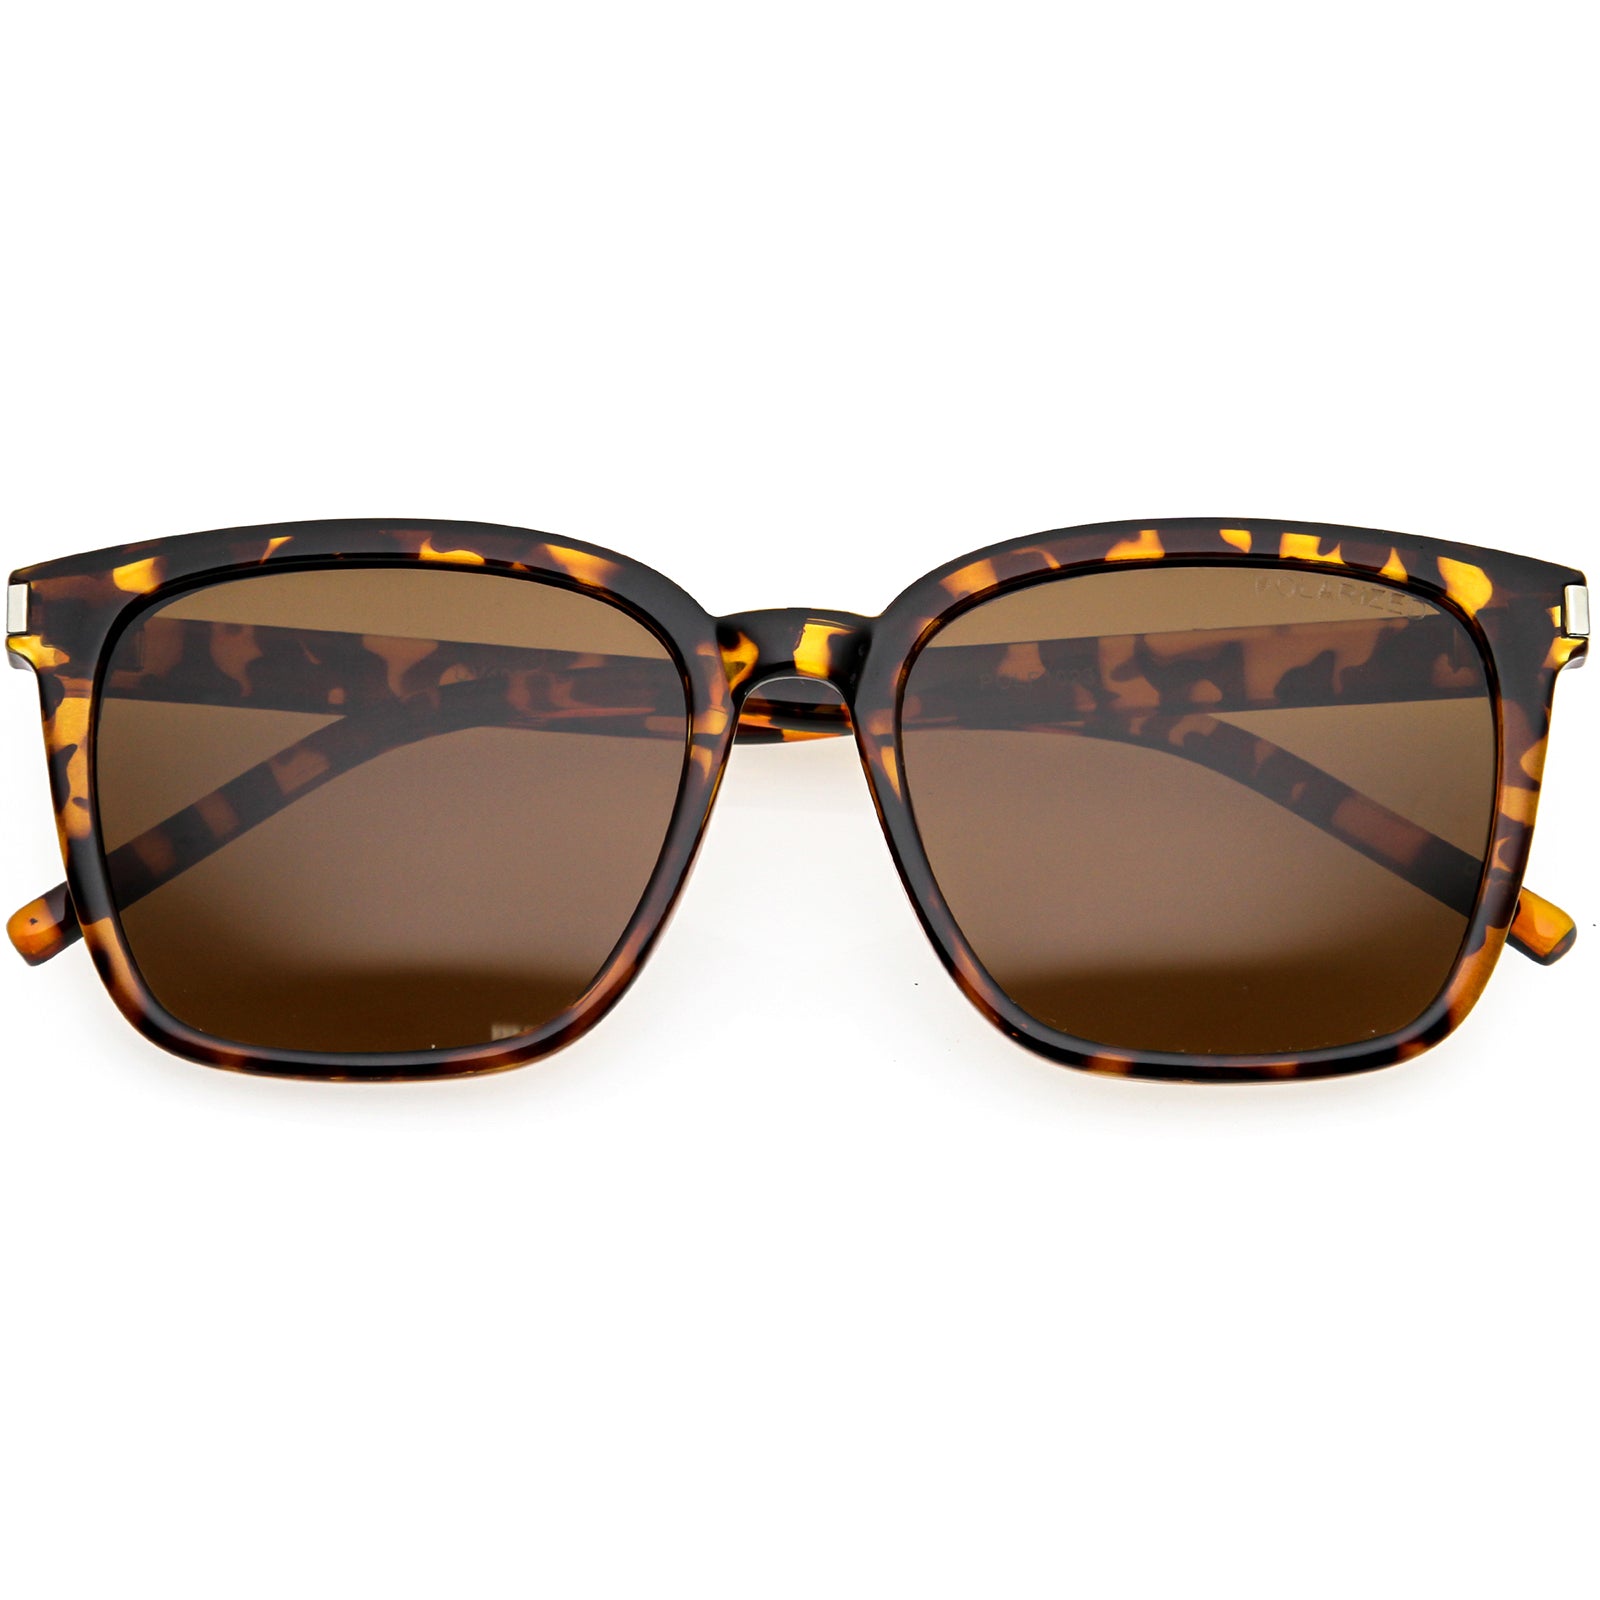 Elegant Polarized Lightweight Horn Rimmed Square Sunglasses 55mm